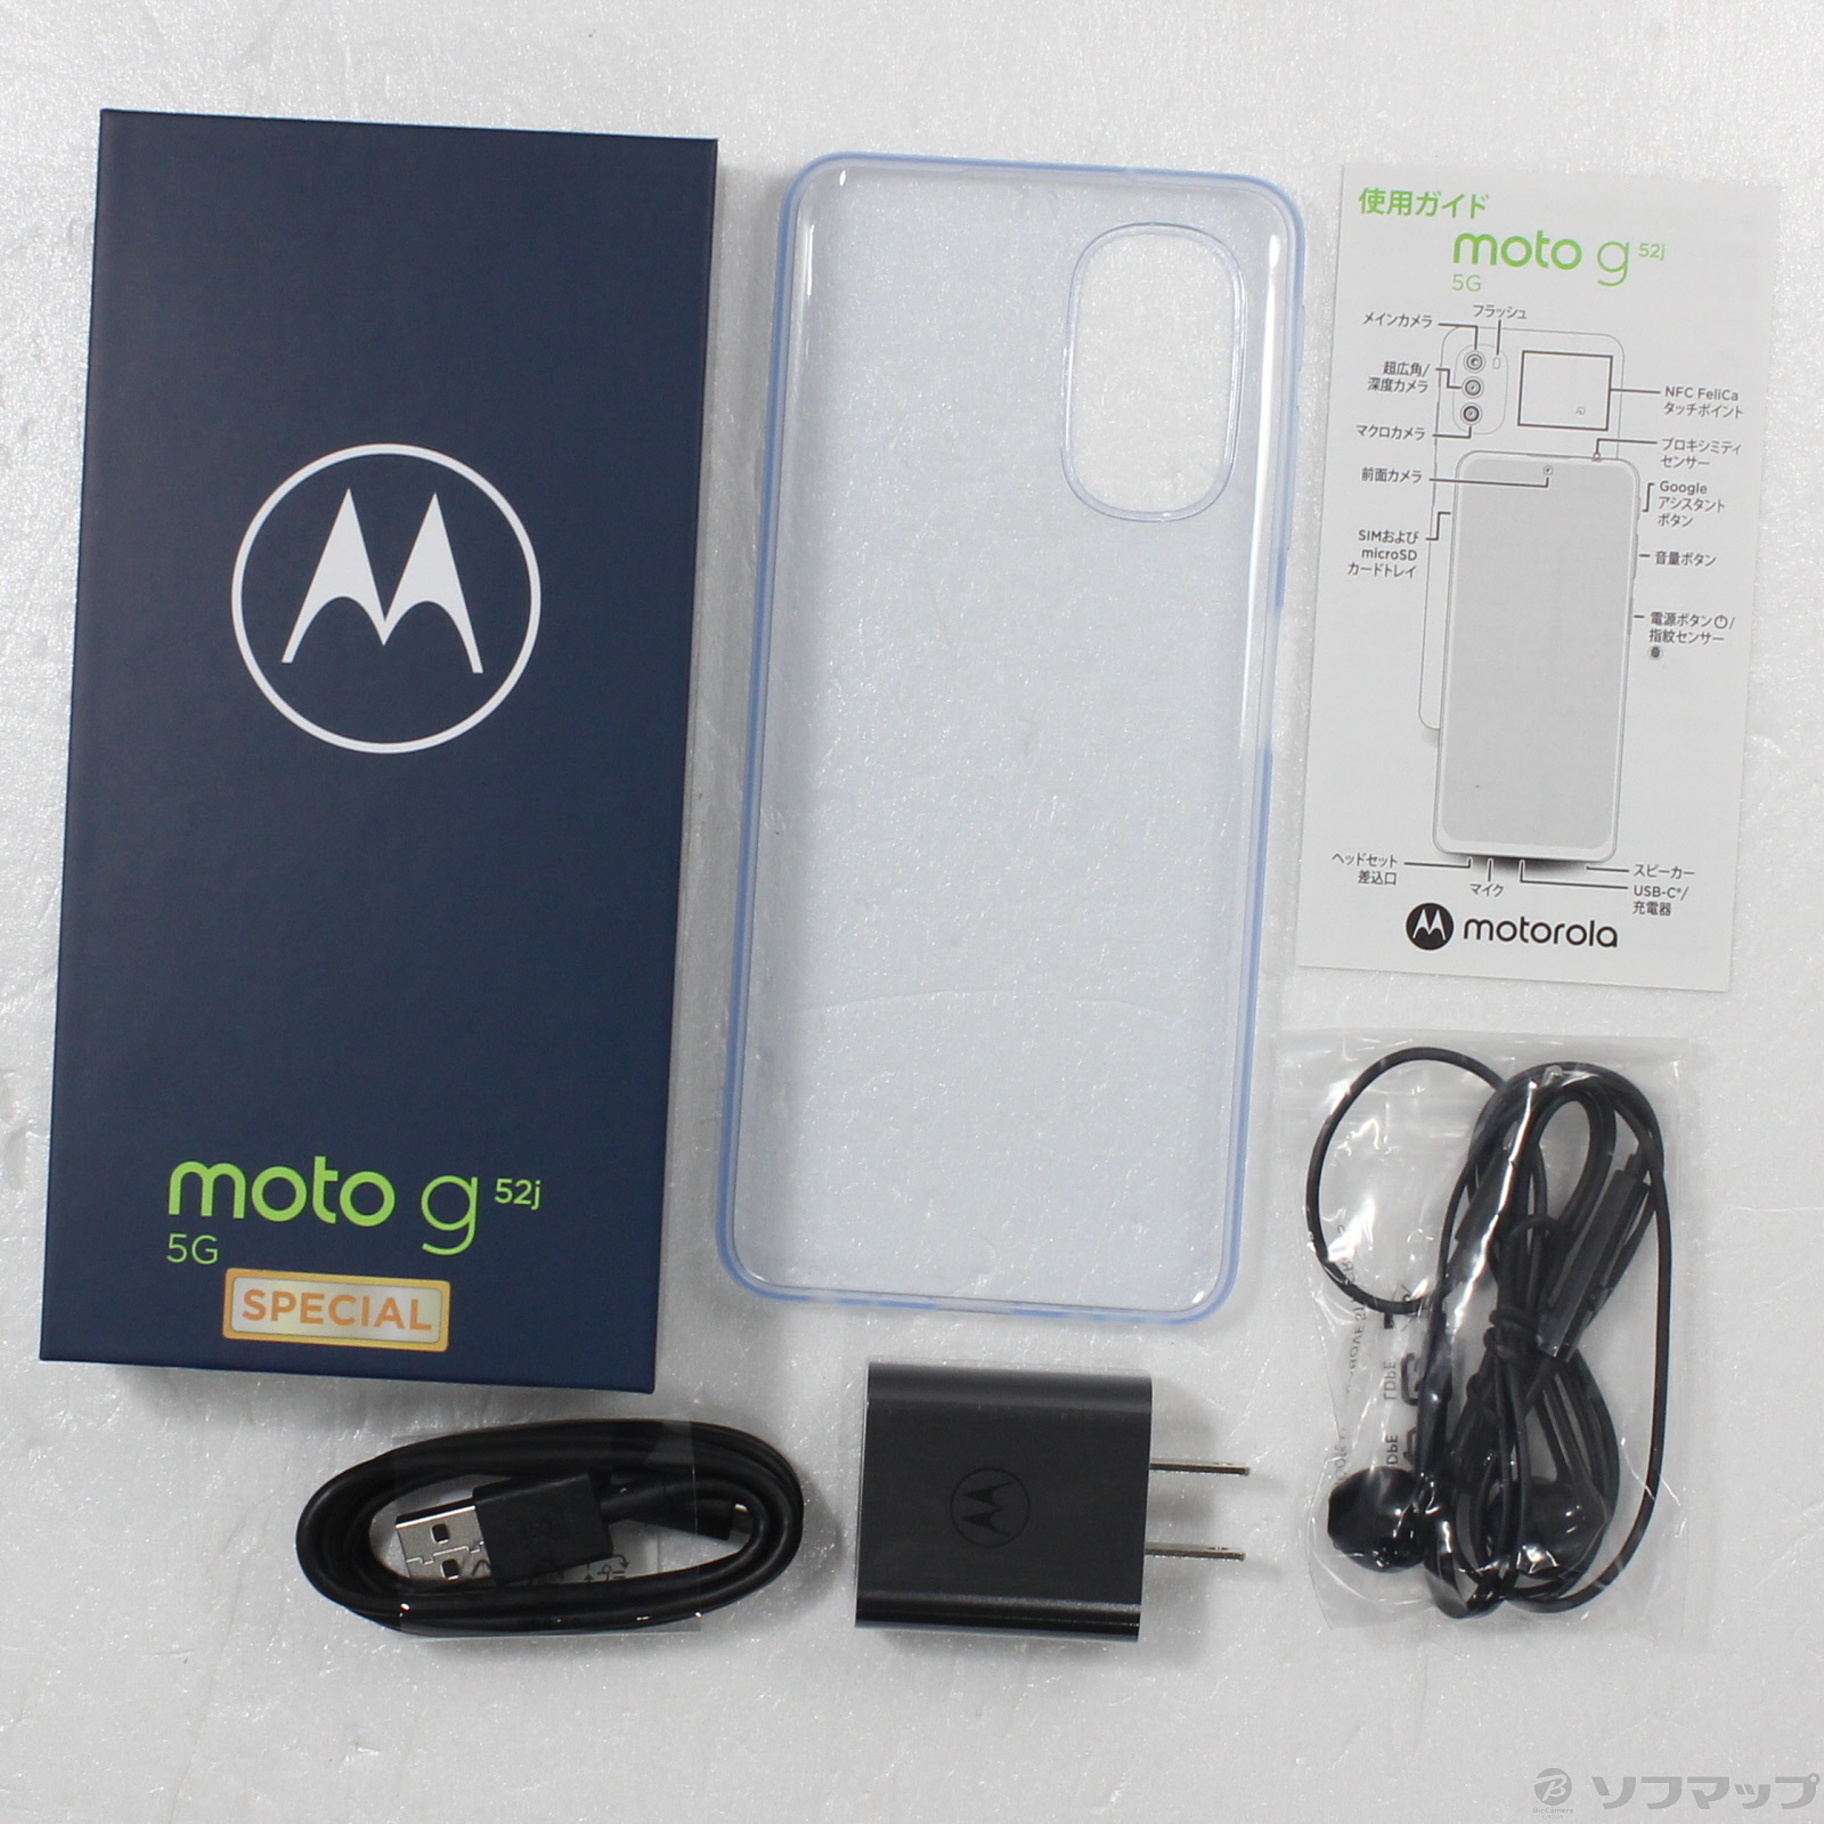 Motorola moto g52j 5G SPECIAL インクブラック - スマートフォン・携帯電話